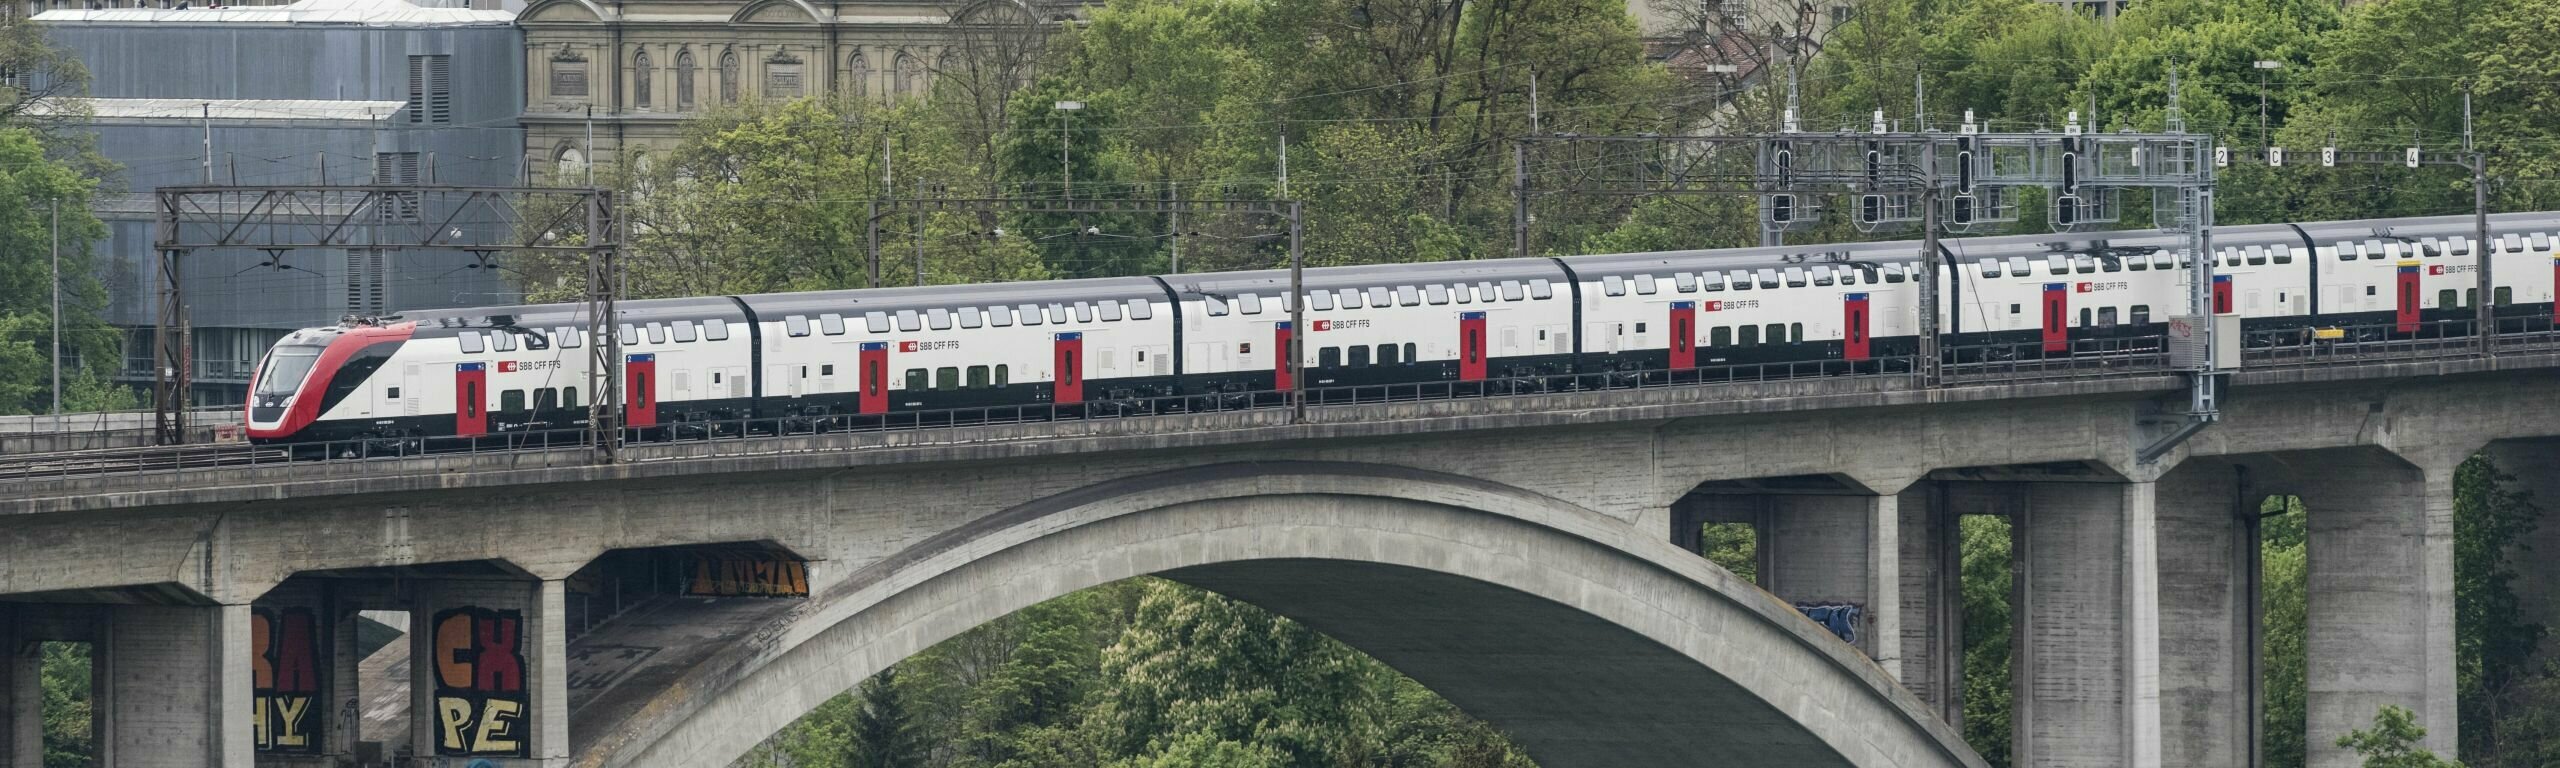 Train à la gare de Berne avec le Palais fédéral en arrière-plan